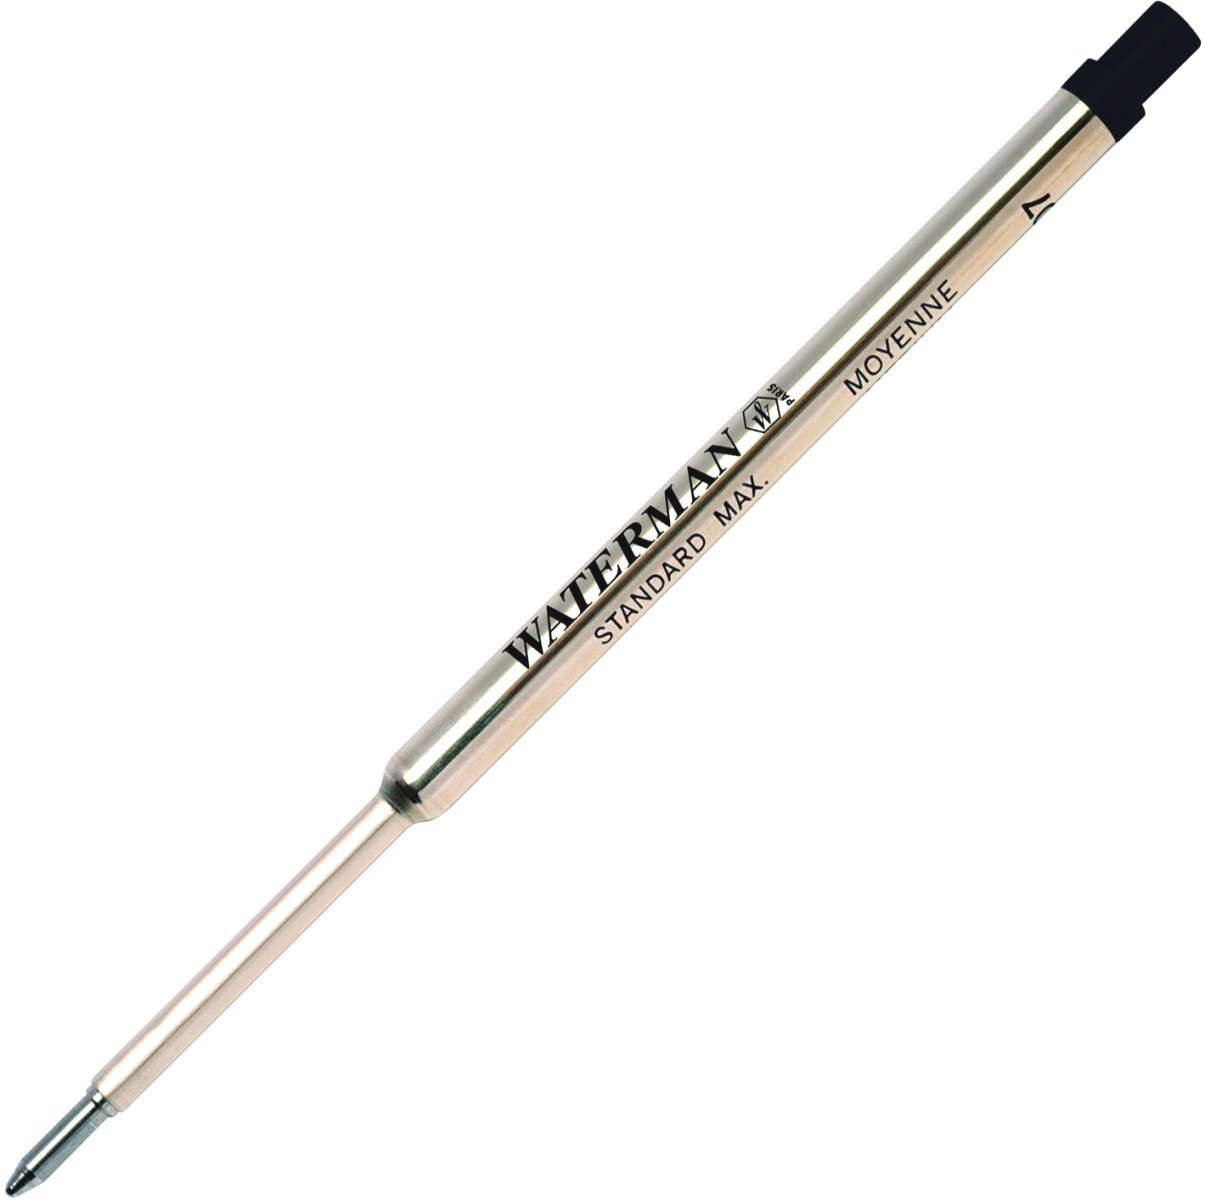  Черный стержень для шариковой ручки Waterman Refill BP Standard Maxima (F), фото 2